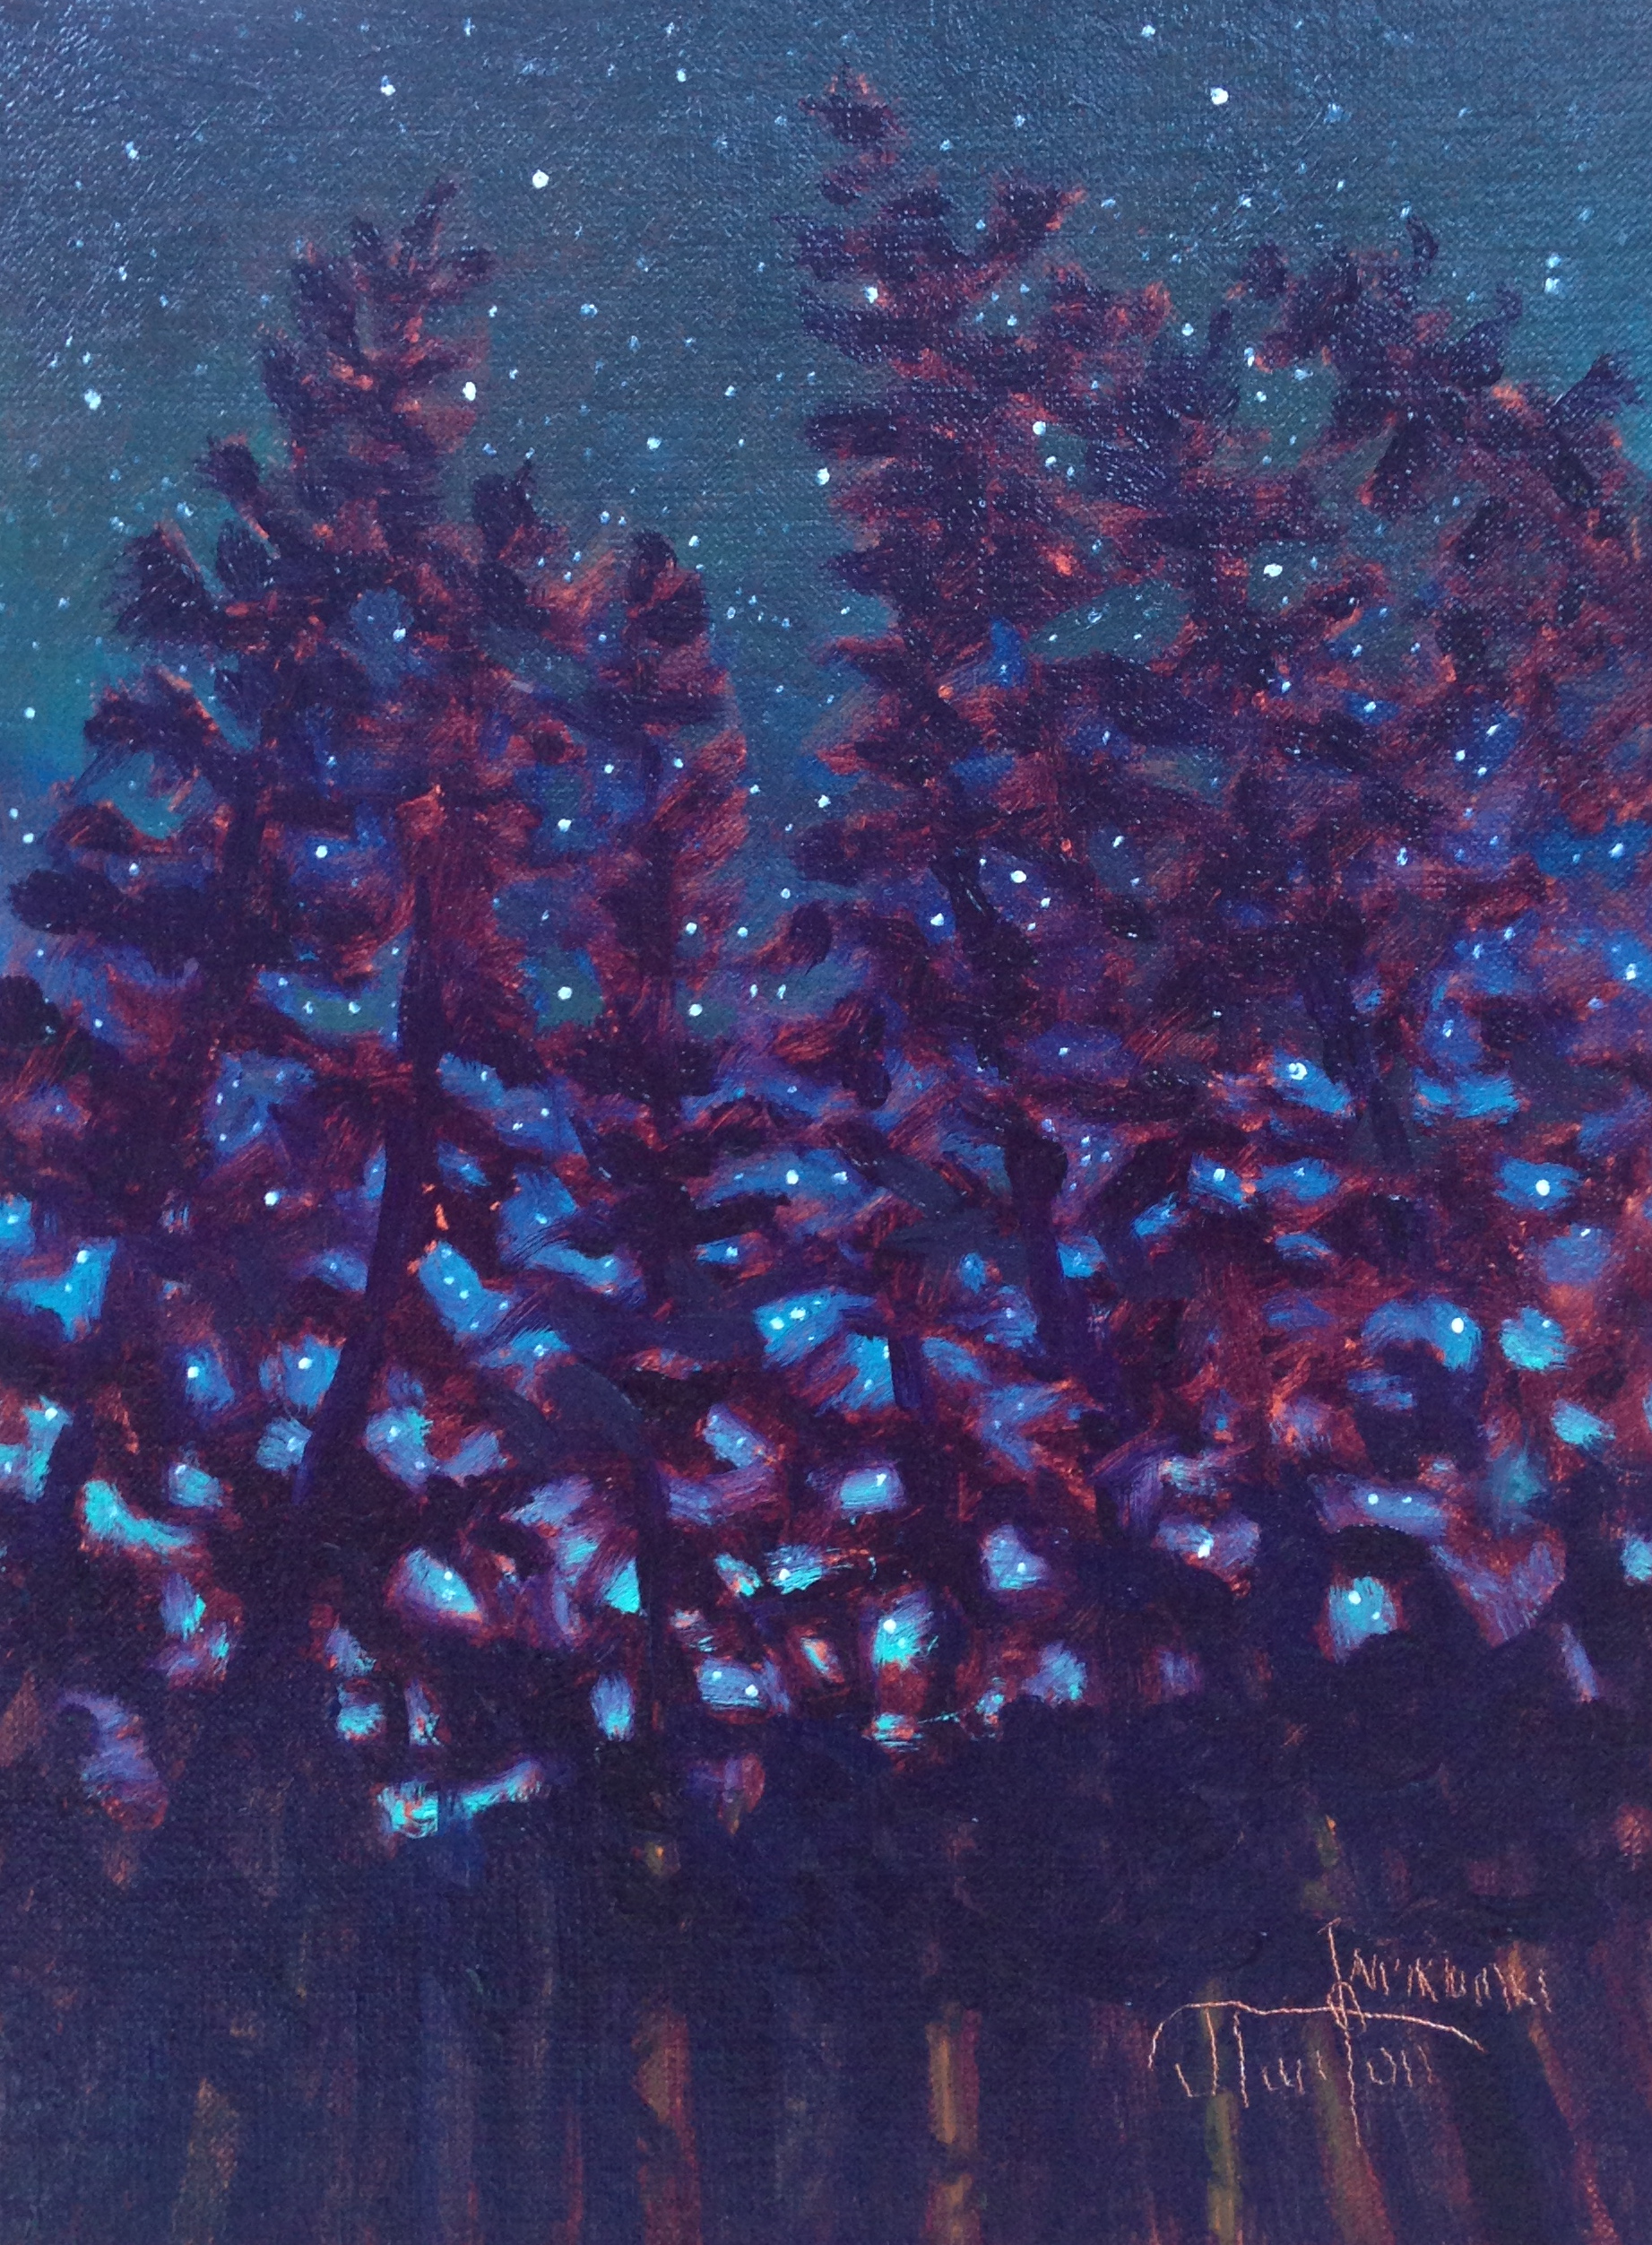 "Waiparous Starry Night" ©2013 Janice Tanton. Oil on linen panel. 6"x8"